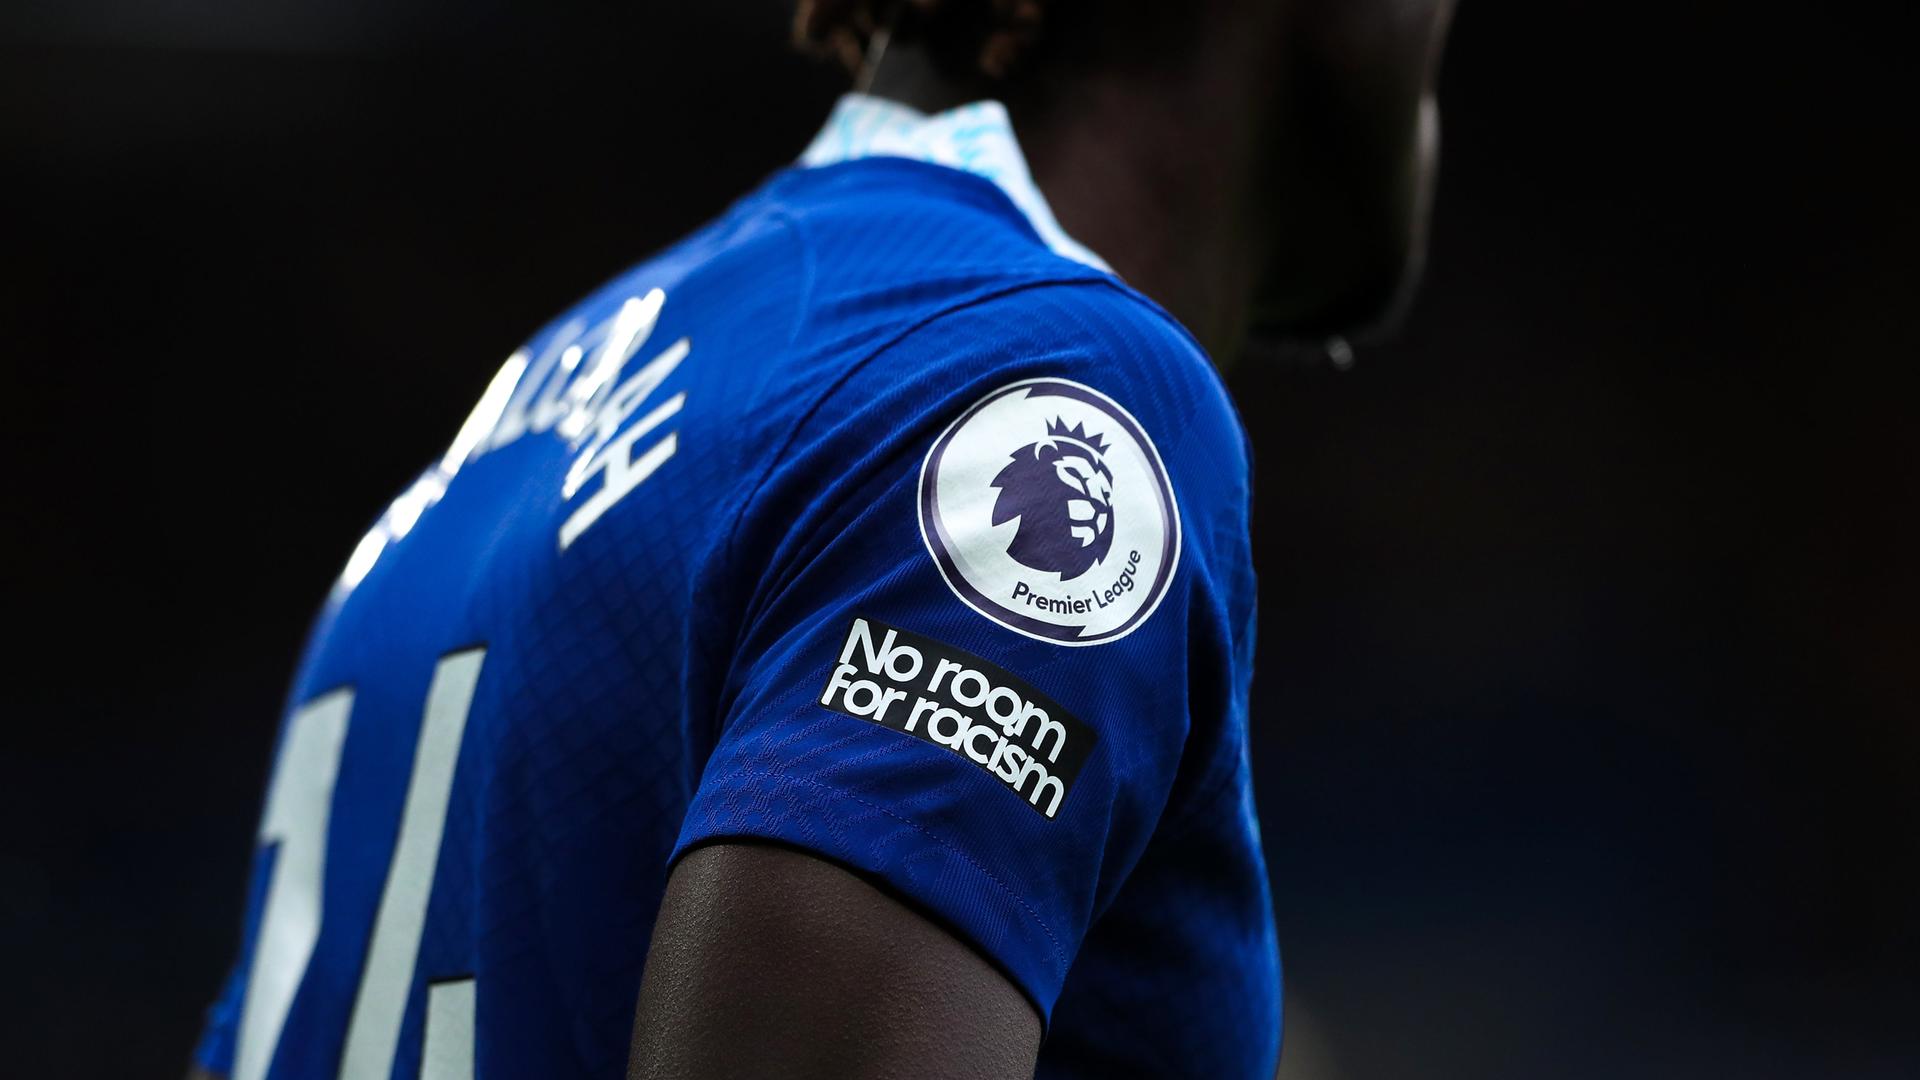 Ein Spieler der Premier League in Großbritannien, der auf seinem Trikot einen Aufnäher mit der Aufschrift "No room for racism" trägt